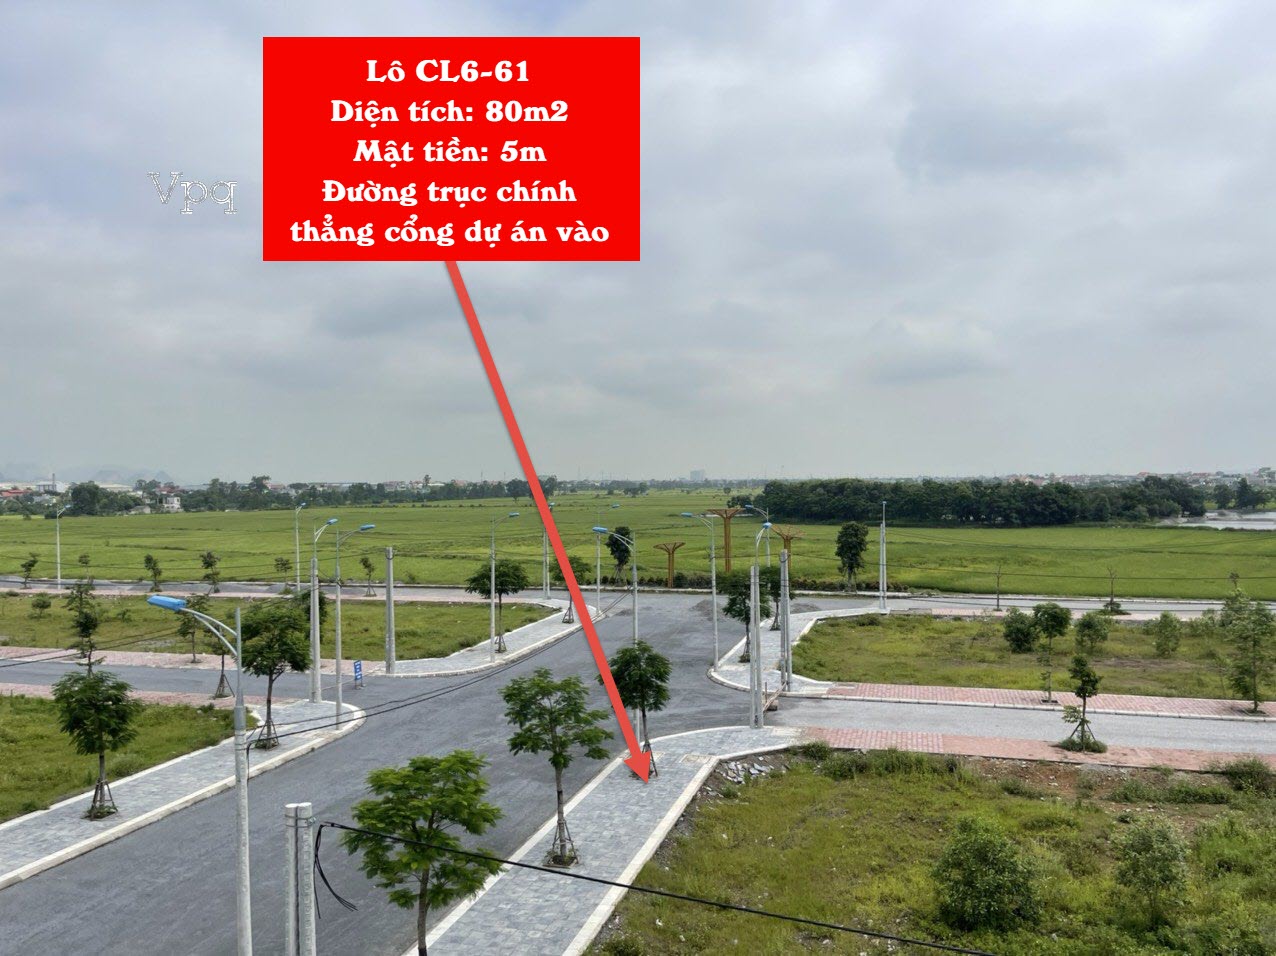 Lô đất CL6-61 nằm trên trục đường 25m này